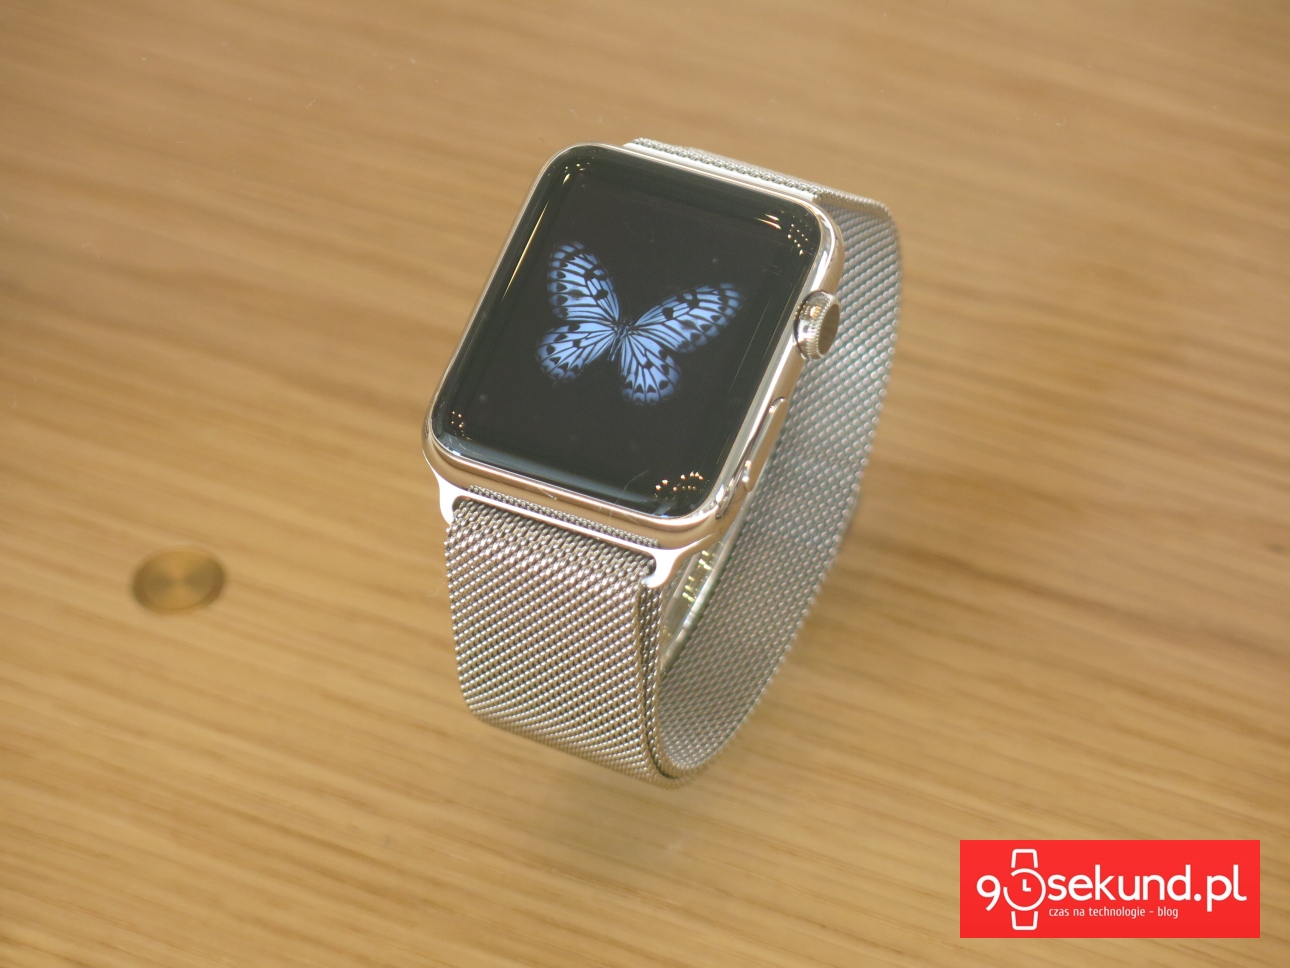 Apple Watch pierwszej generacji - 90sekund.pl